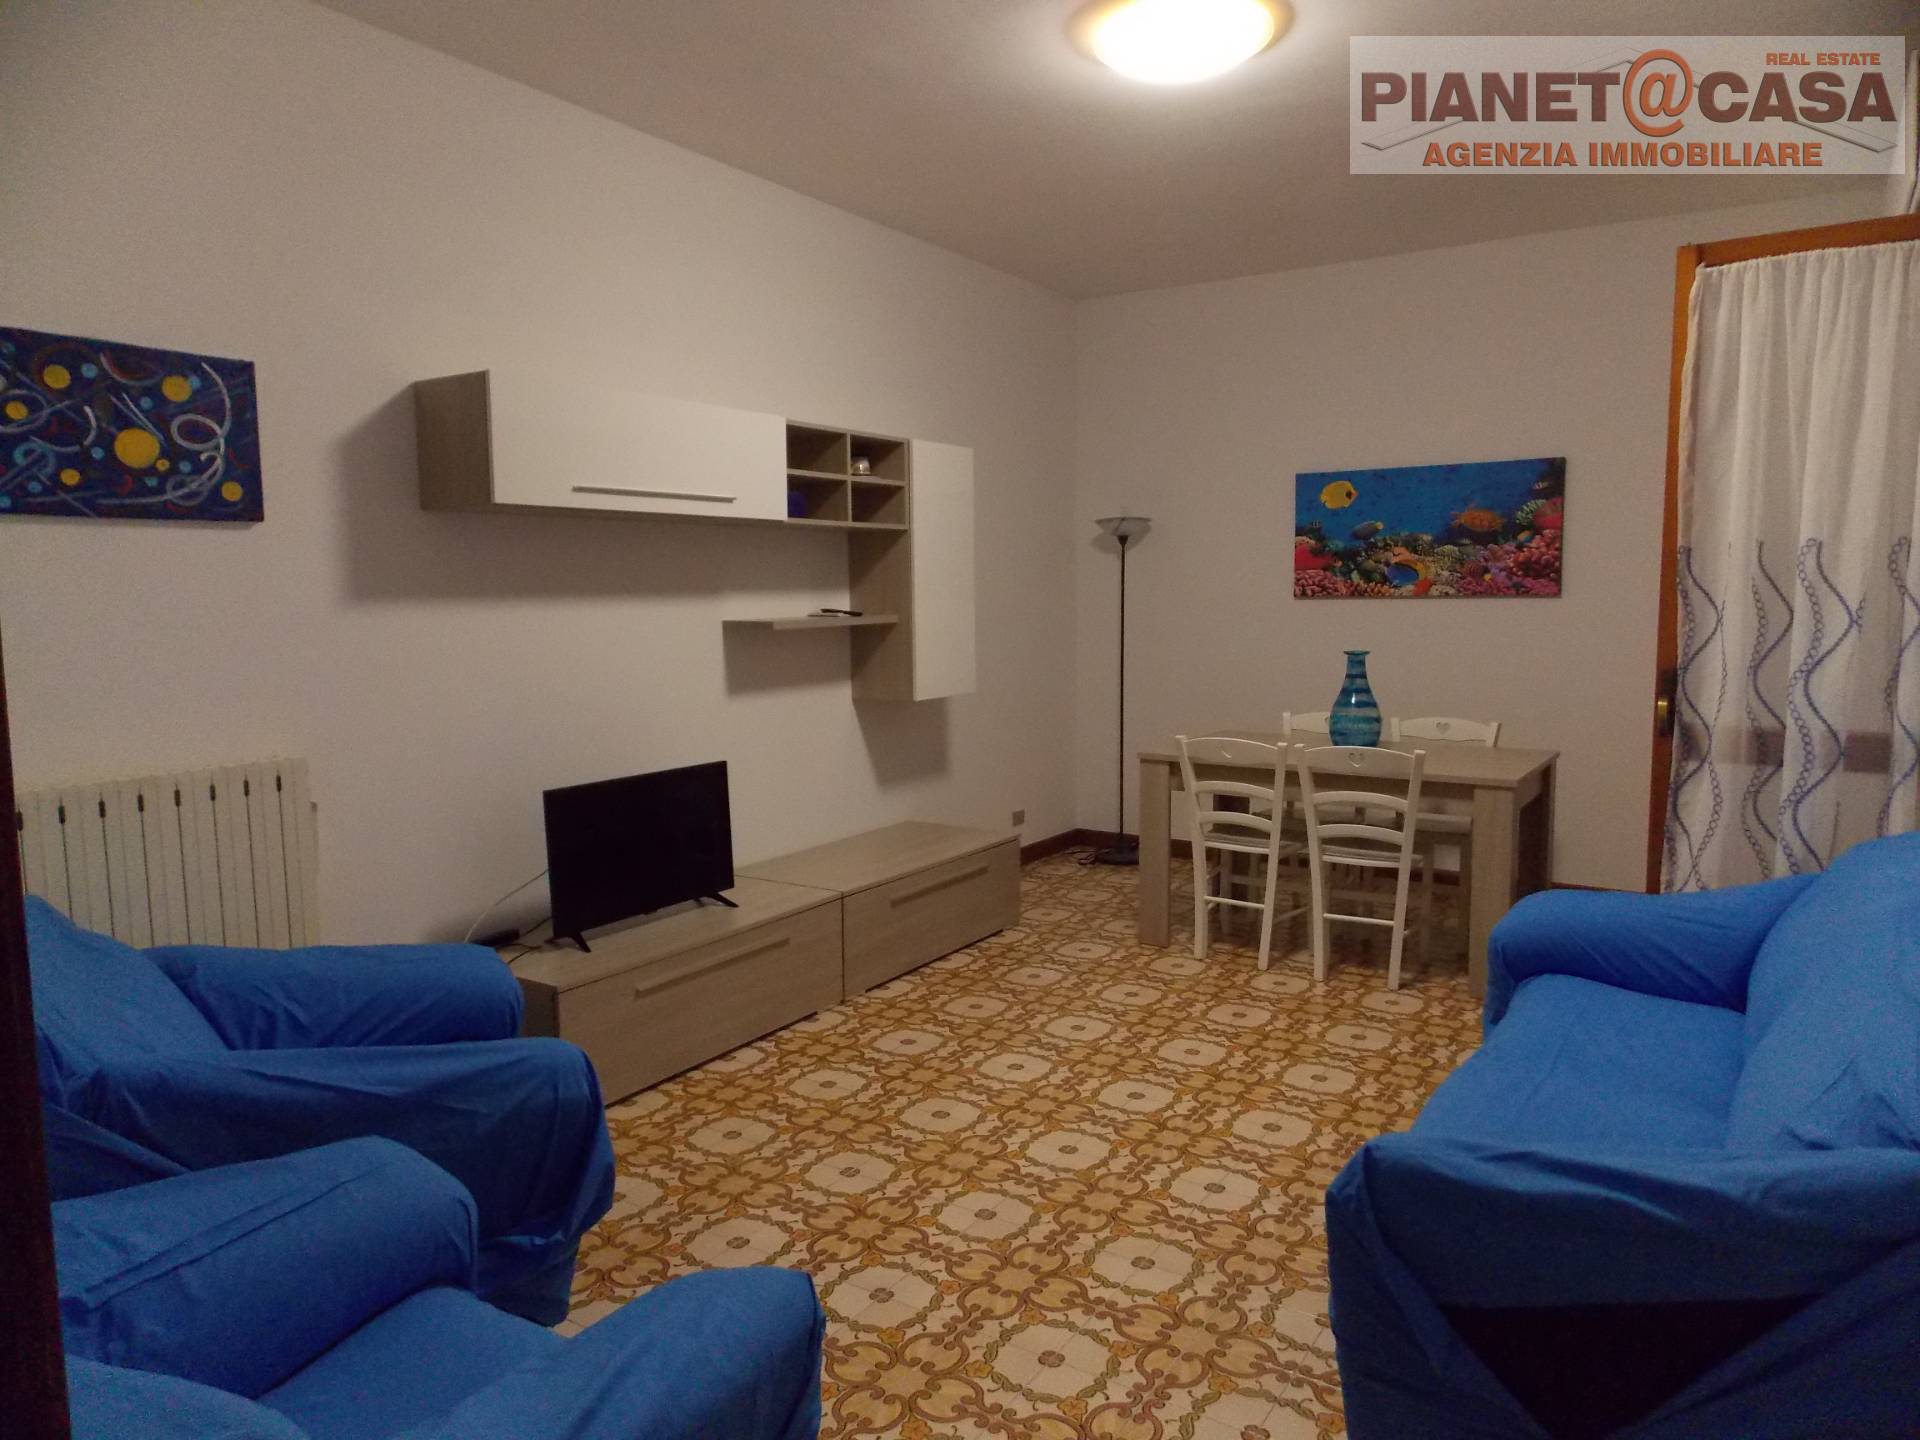 Appartamento in vendita a Alba Adriatica, 5 locali, prezzo € 195.000 | PortaleAgenzieImmobiliari.it